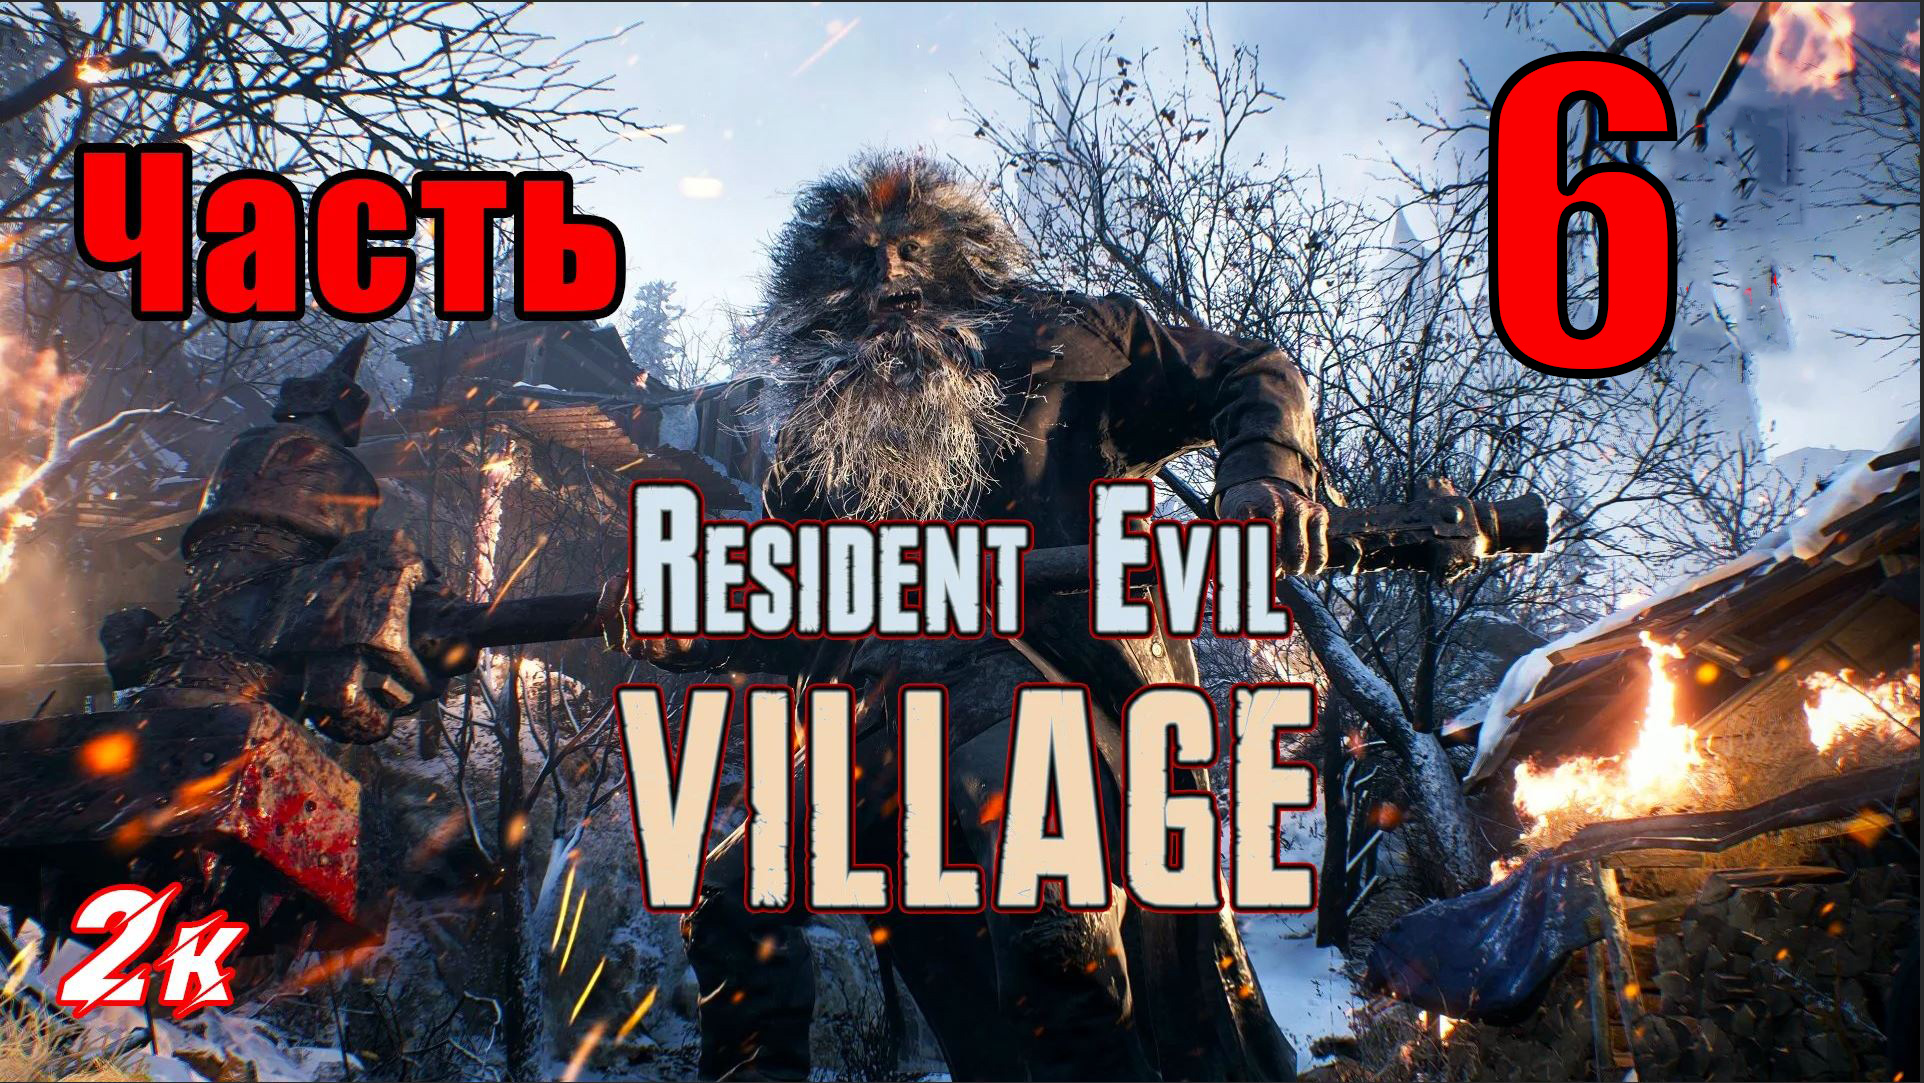 Resident Evil Village - на ПК ➤ Кукольный дом ➤ Прохождение # 6 ➤ 2K ➤